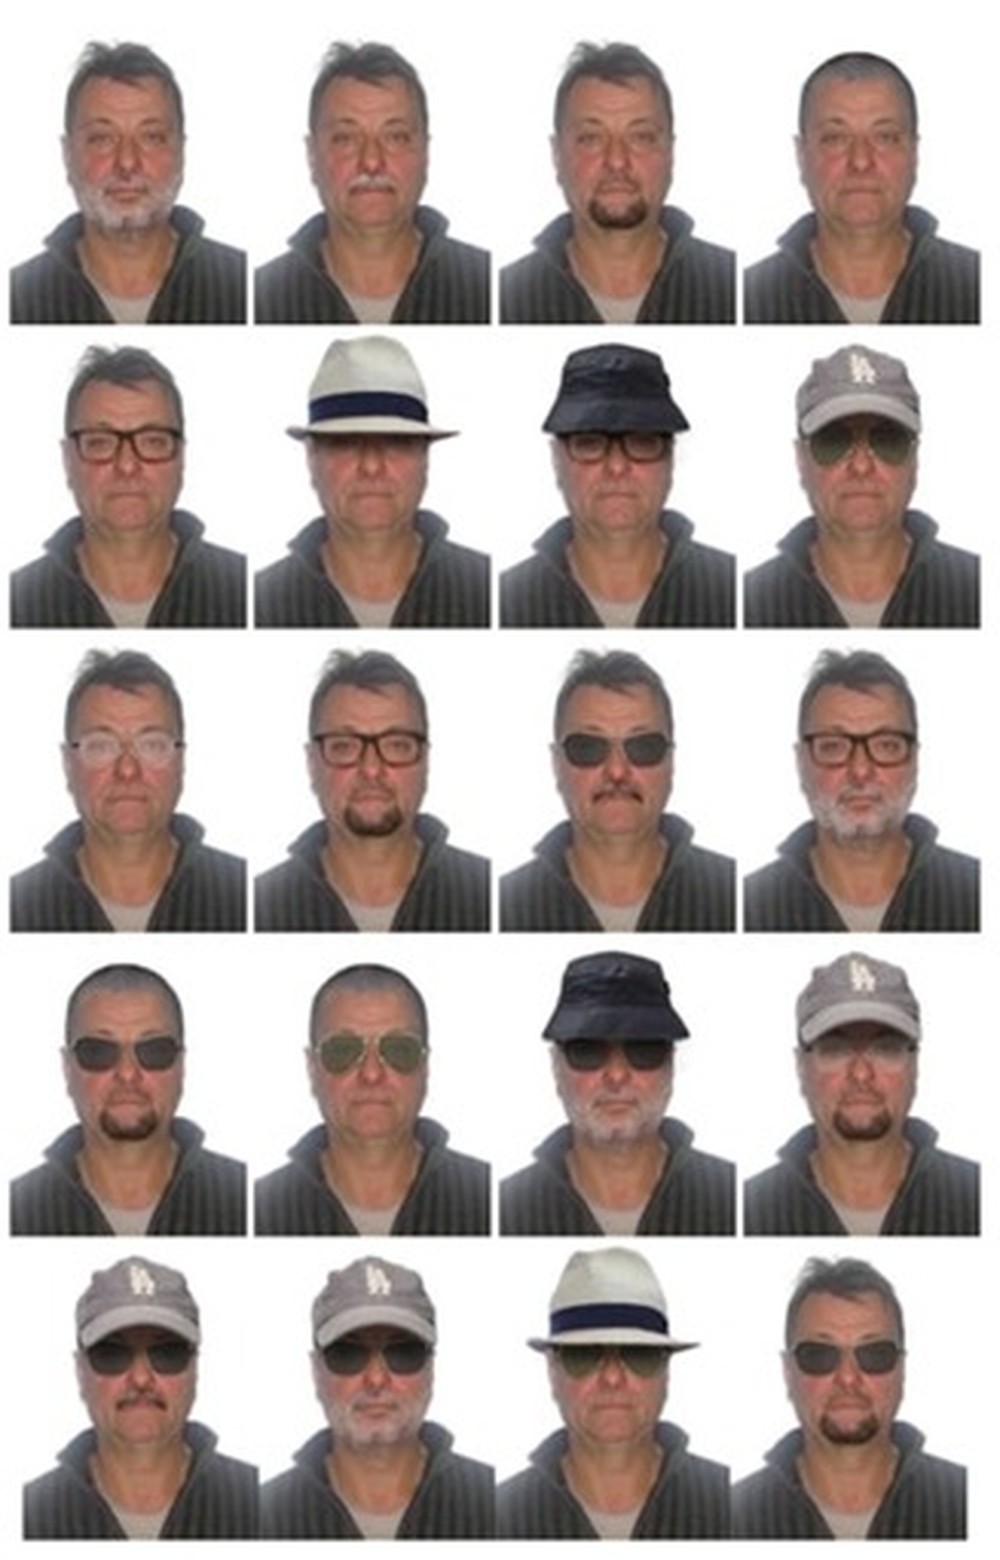 20 simulaes de imagens sobre disfarces, mostrando como poder estar a aparncia de Cesare Battisti. Foto: Divulgao/Polcia Federal